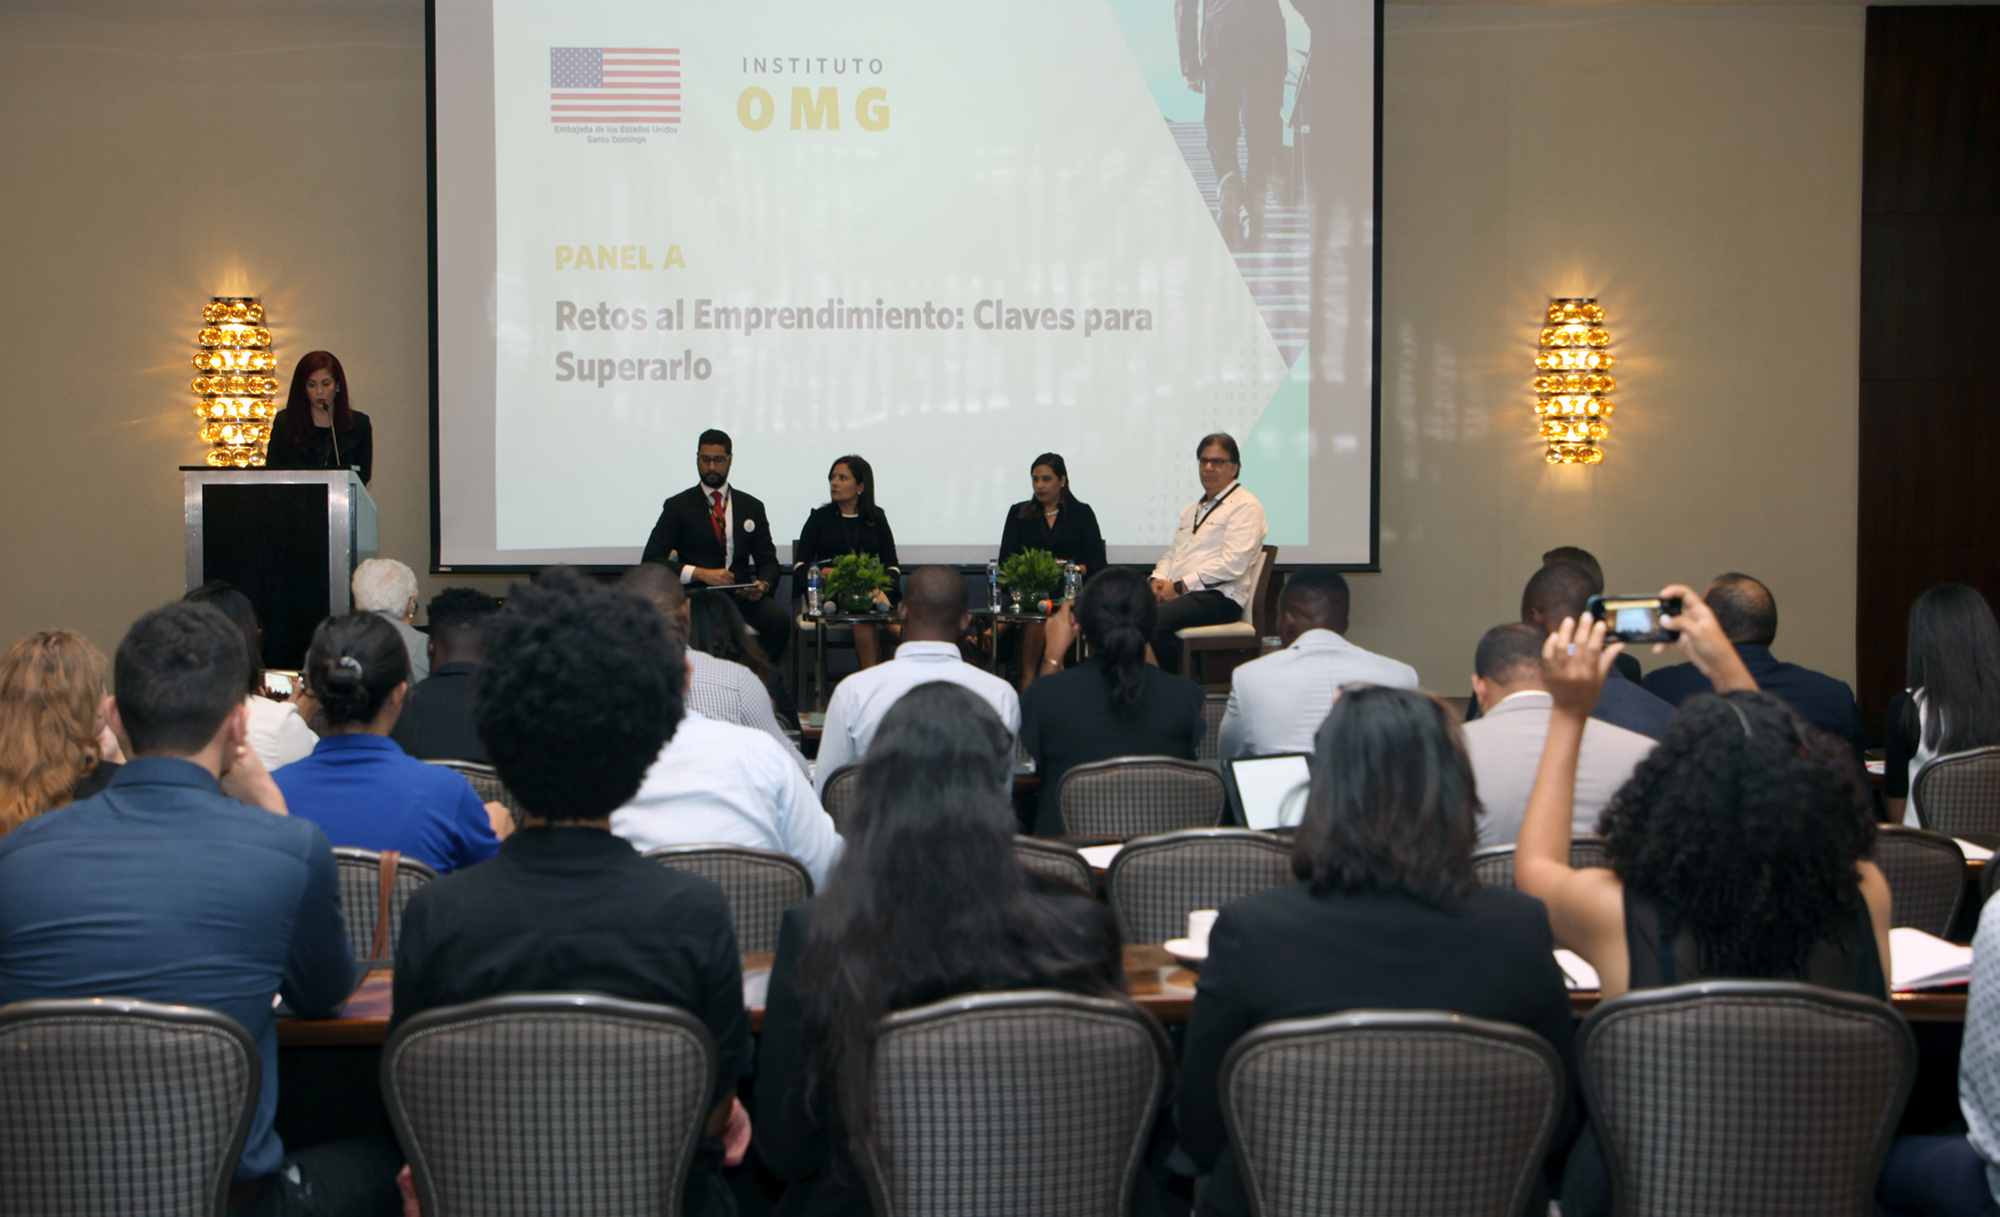 Embajada de los Estados Unidos e Instituto OMG celebran conferencia sobre emprendimiento